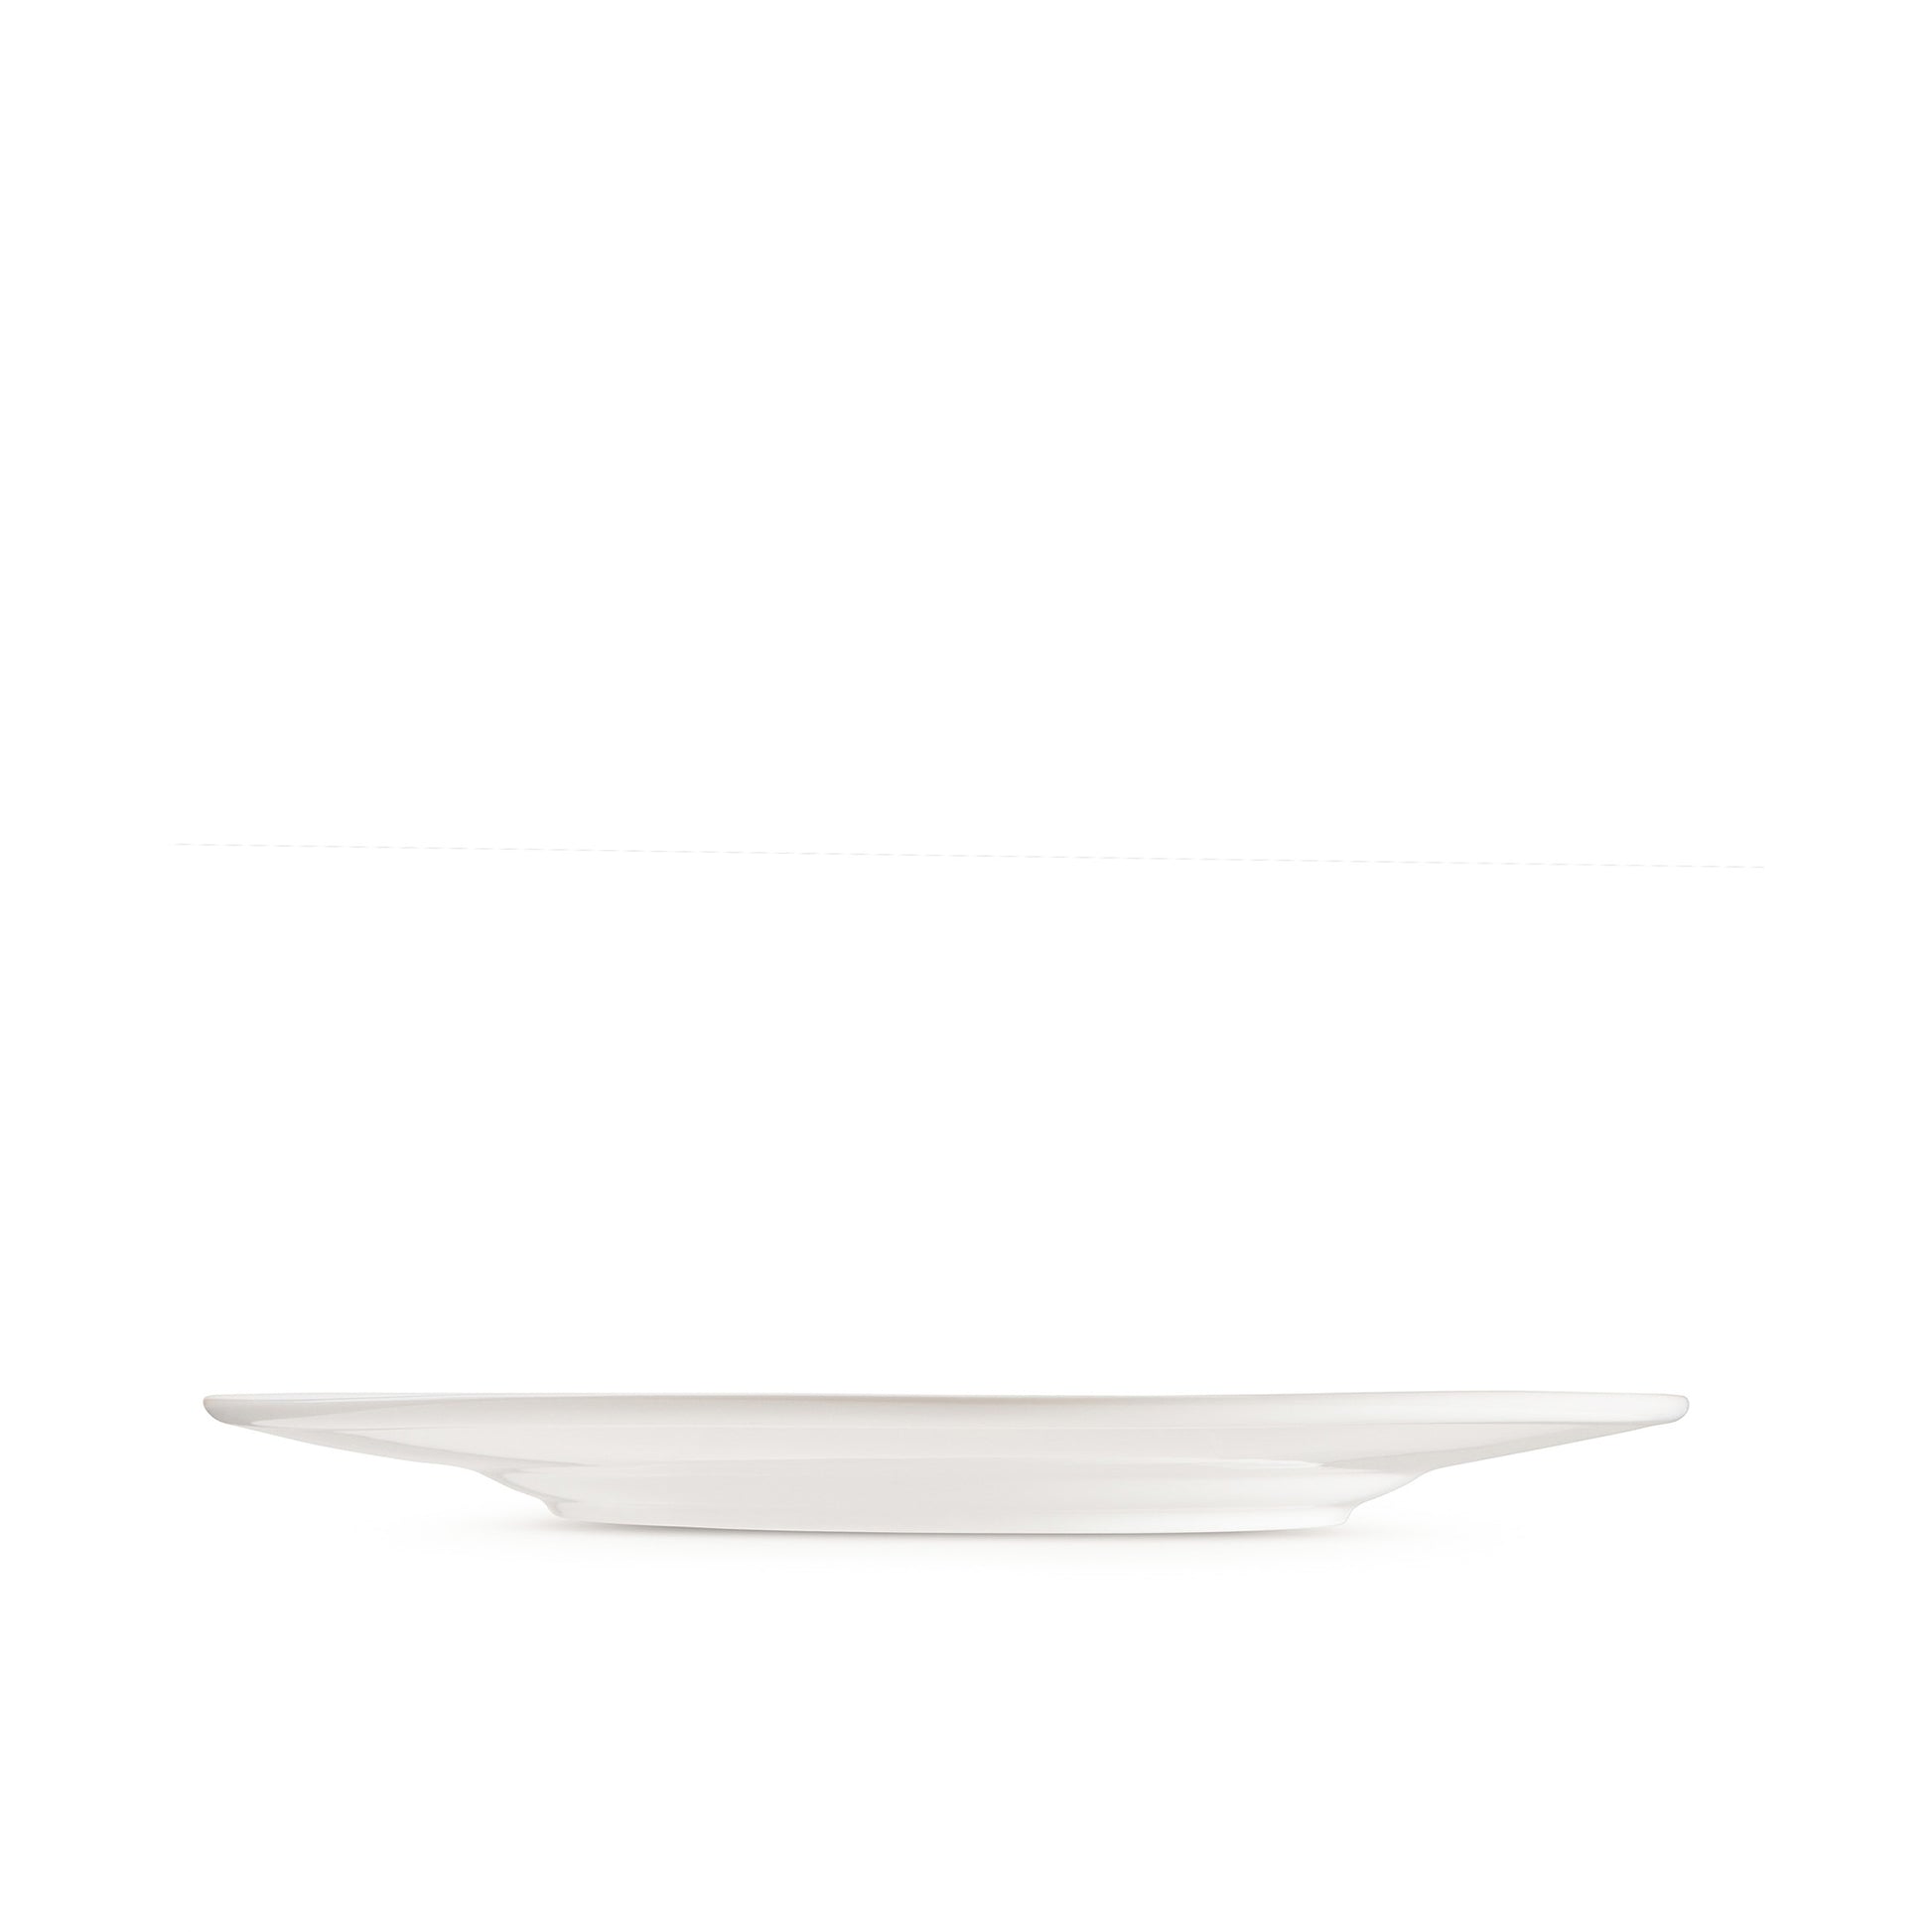 11 3/4" white porcelain dinner plate, horizontal view, media 4 of 4